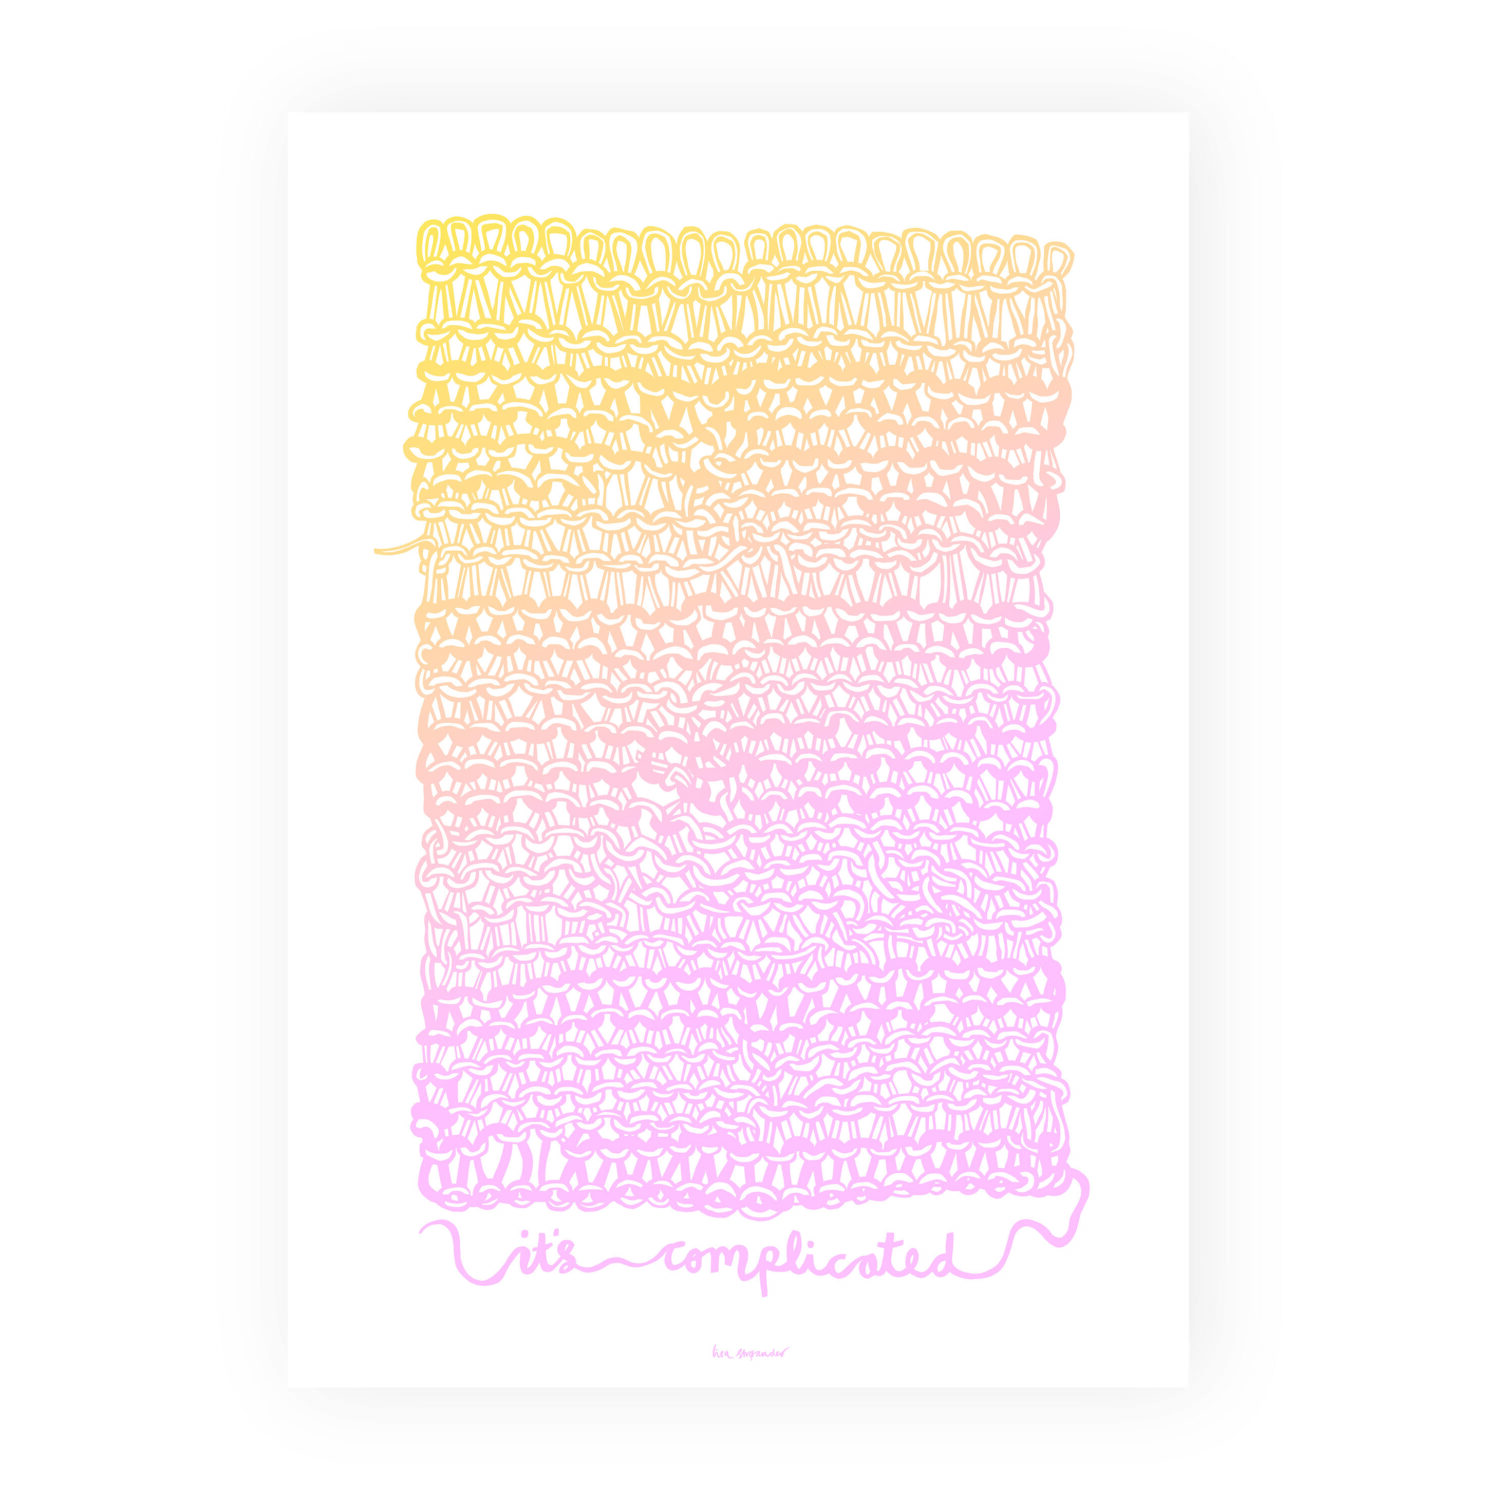 Plakatversion af papirklip, der forestiller et stort stykke strikketøj i gult og lyserødt